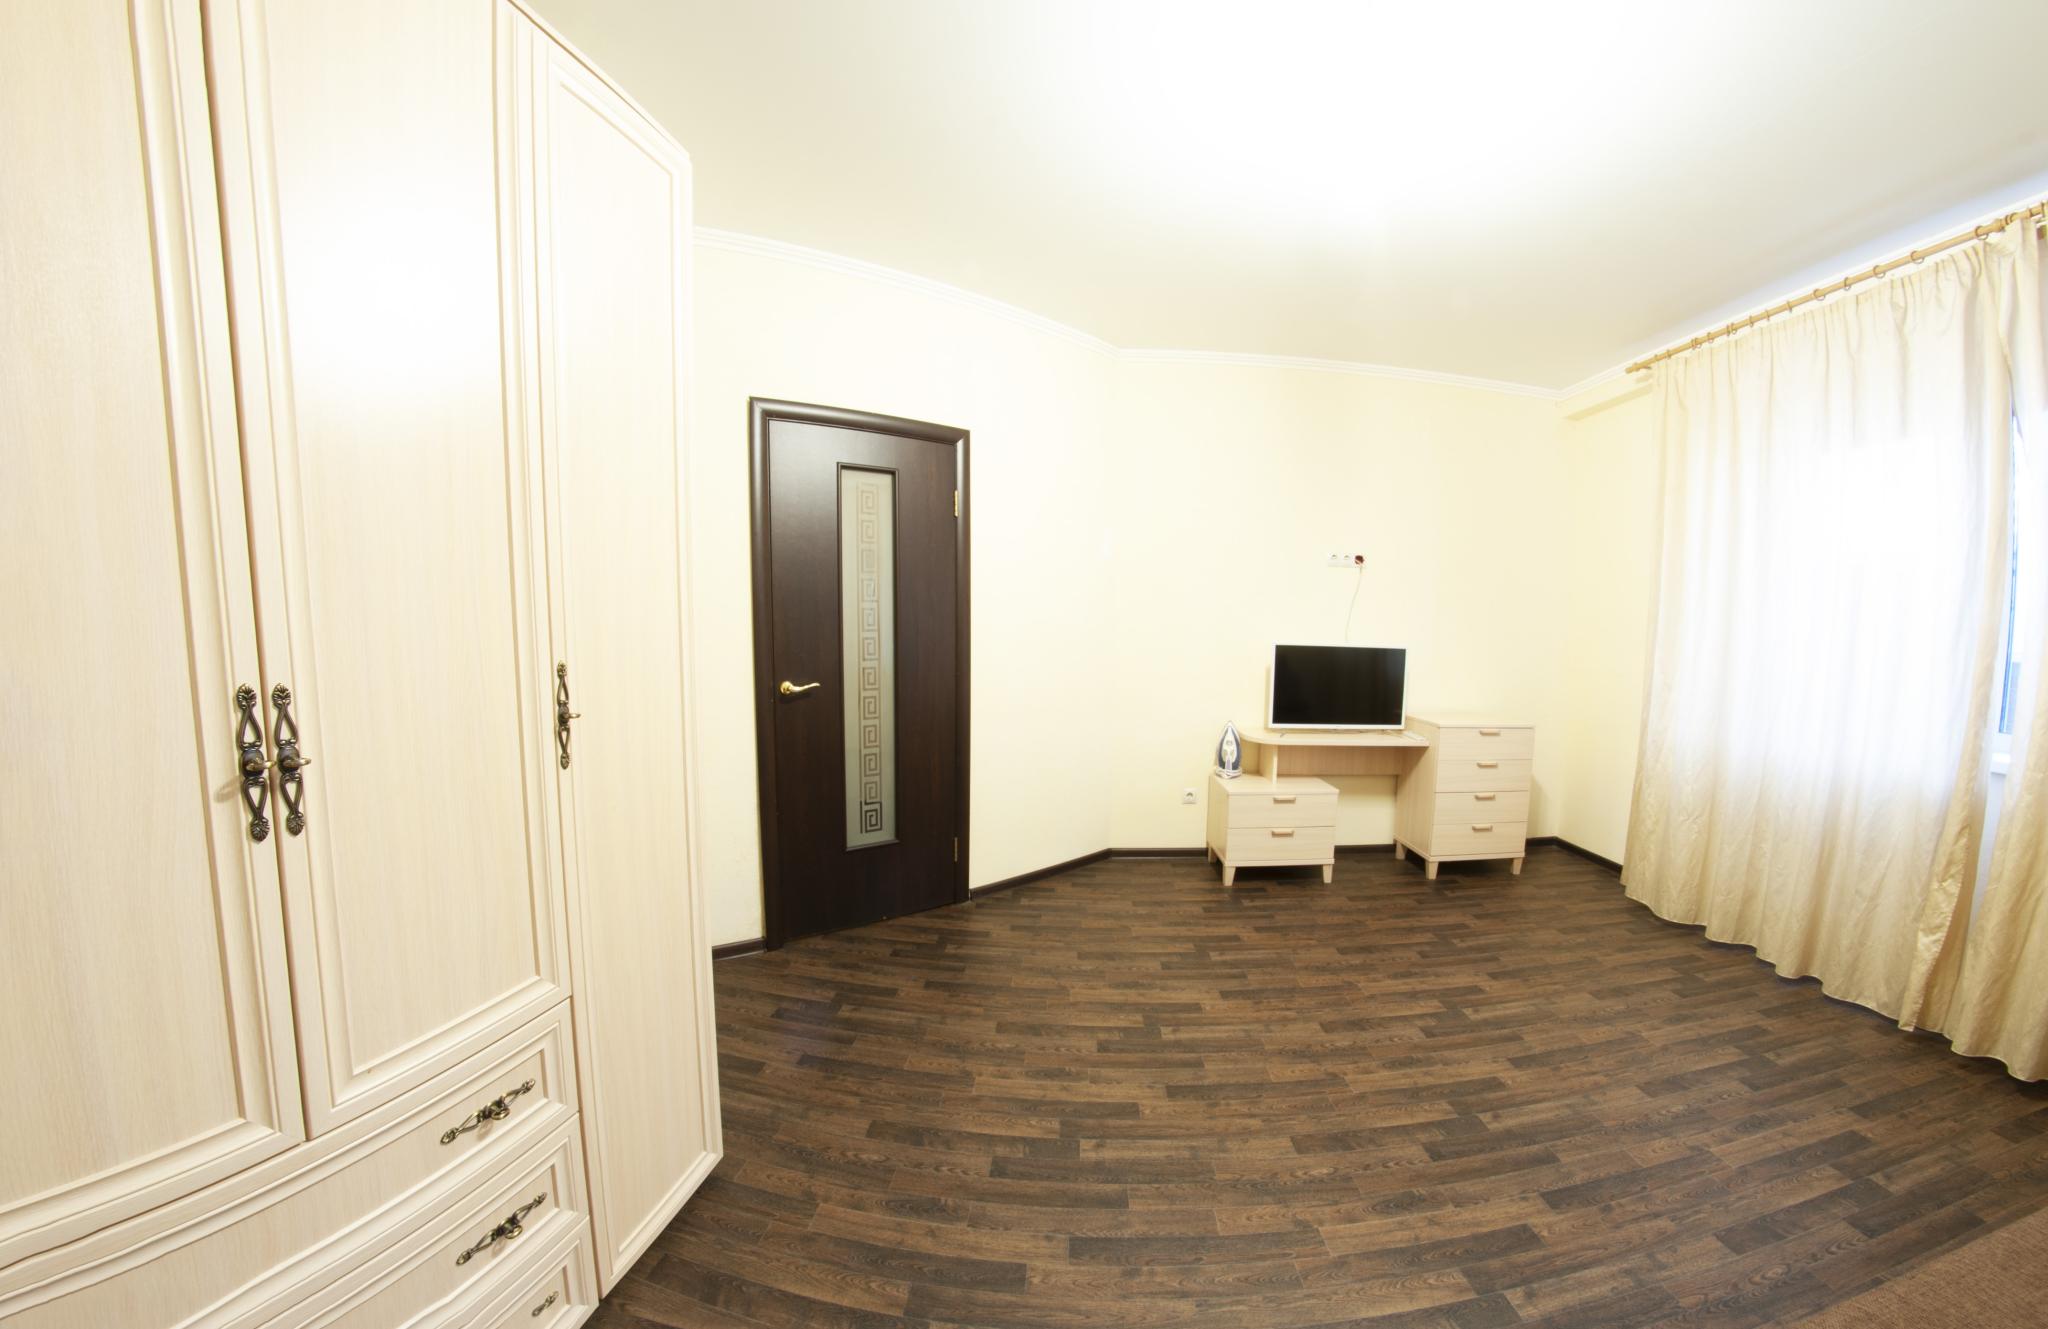 Ялта мм гостиница Ялуторовск Тюменская область. Фабричная 9 квартира посуточно ванная. Купить квартиру на фабричной